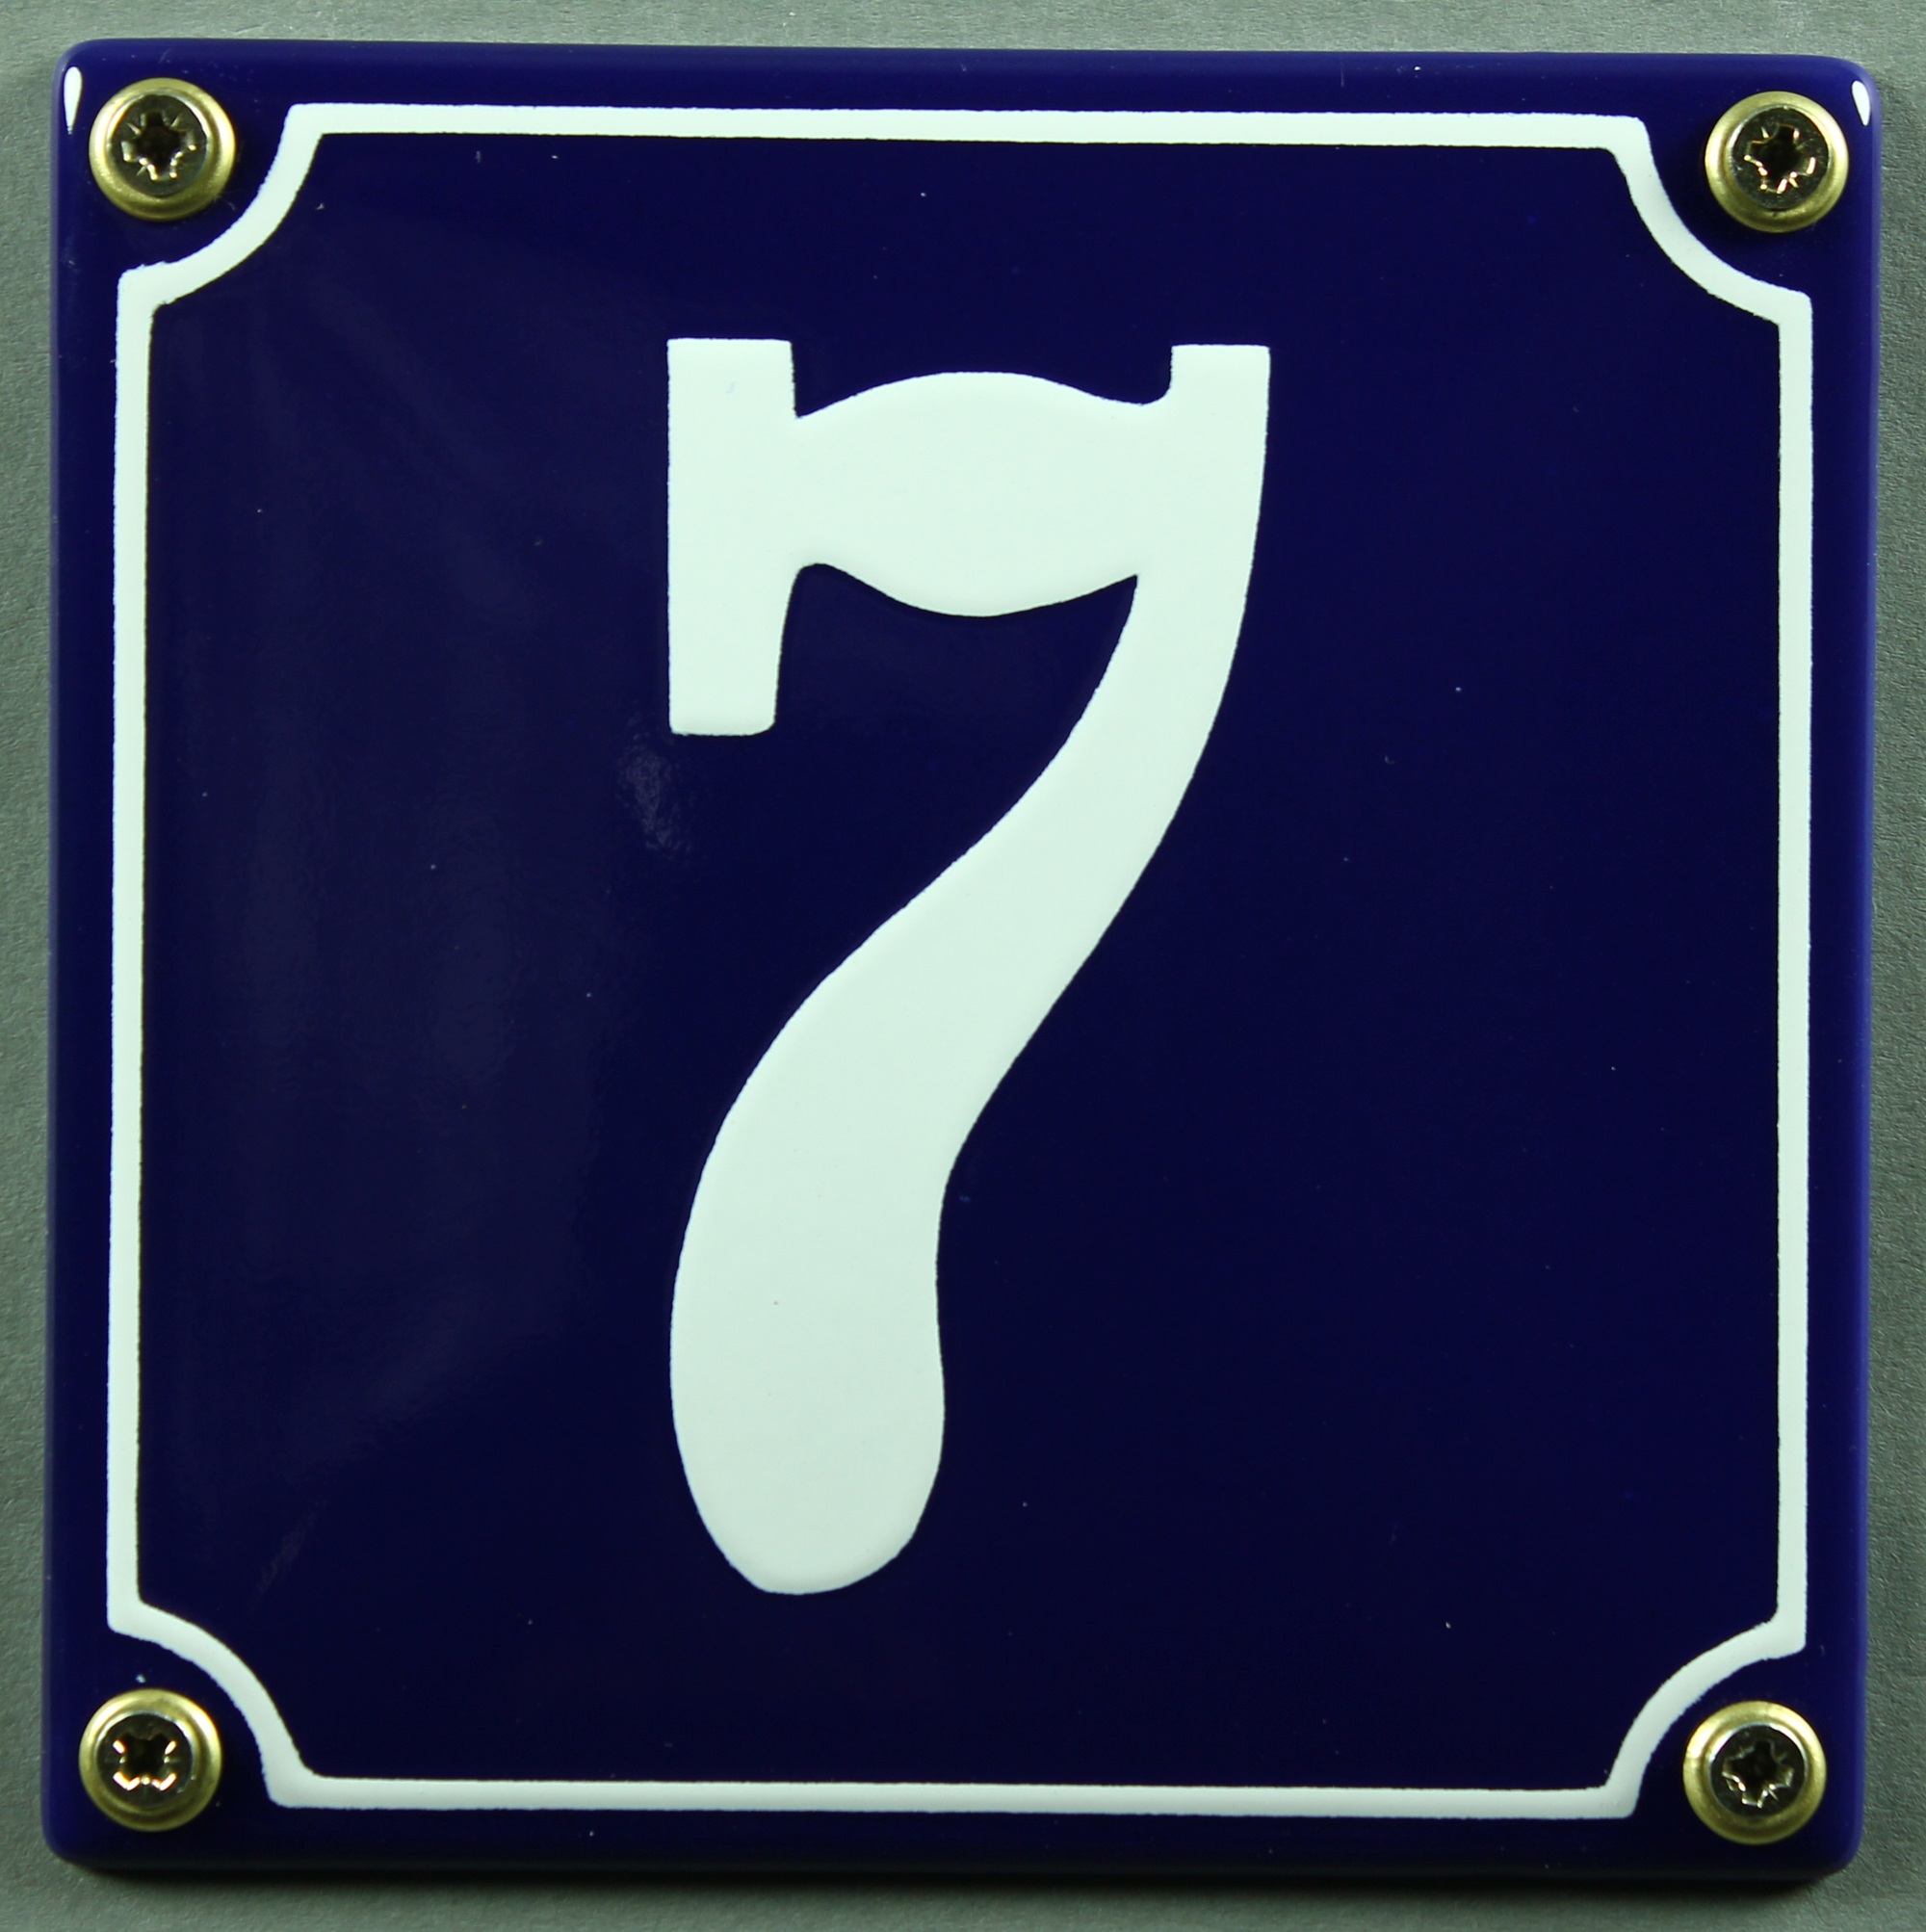 blau/weiß 12x12 cm und 12x14cm Emaille Hausnummernschild 1 blau/weiß 12x12cm Hausnummer Schild wetterfest und lichtecht Zahlen 1 bis 30 verfügbar Wählen Sie Ihre Nummer sofort lieferbar